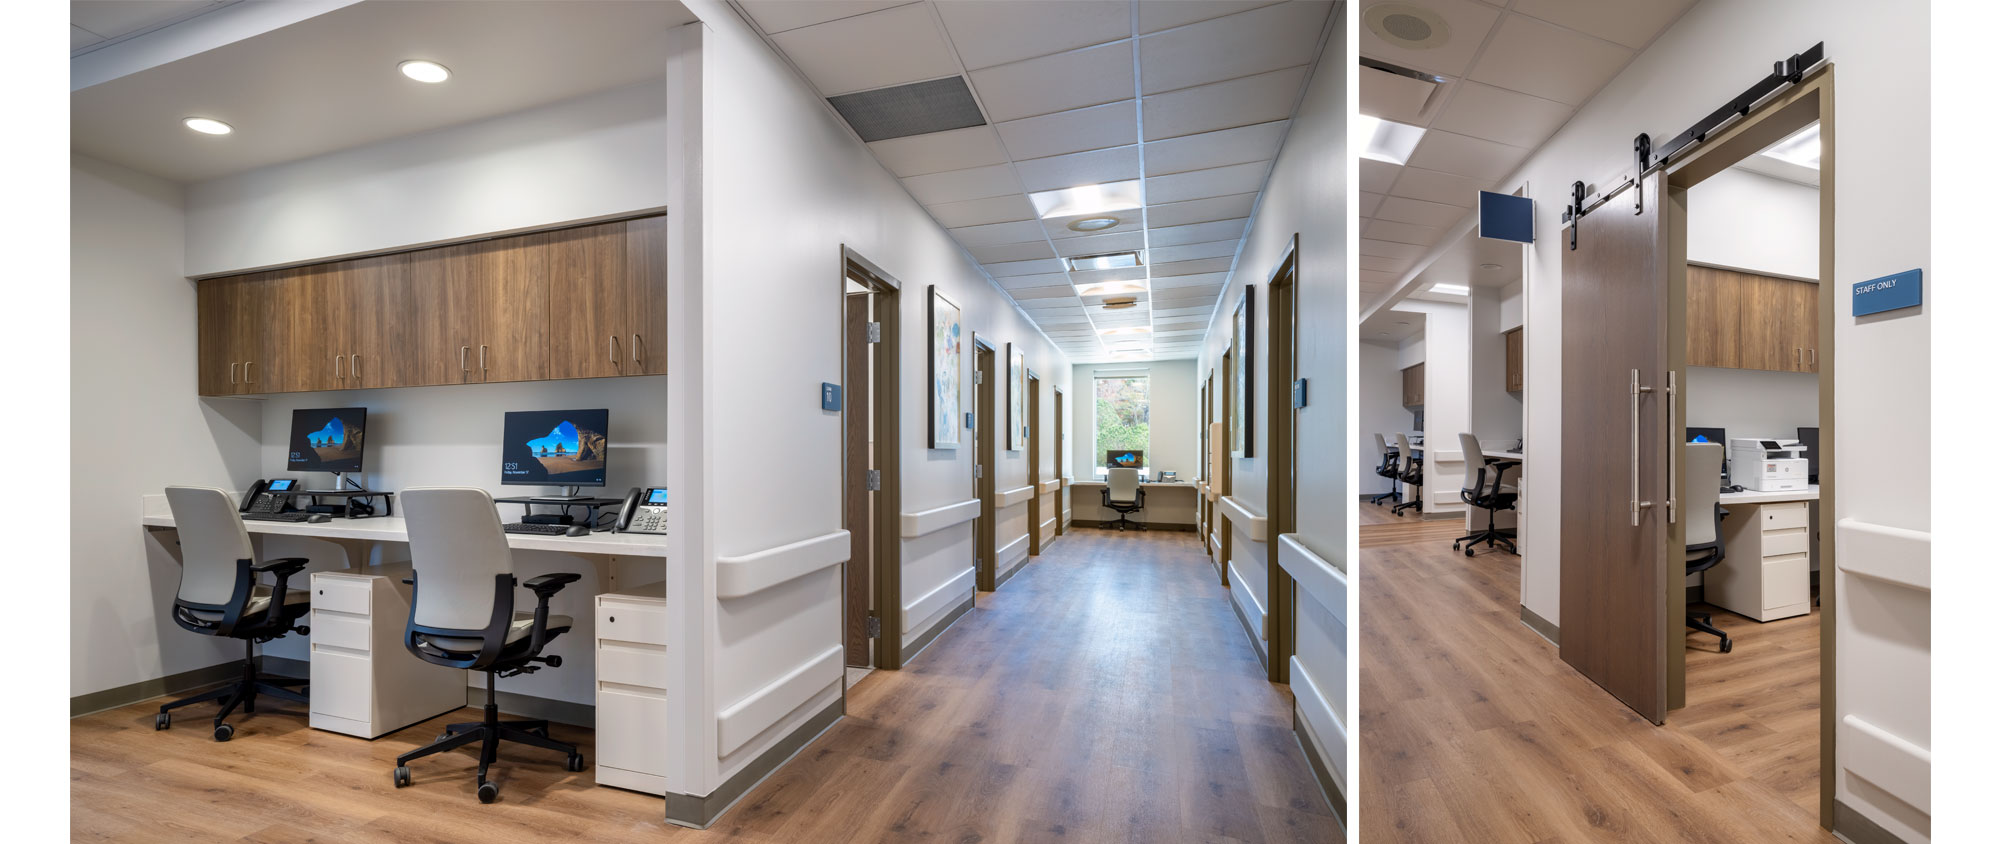 Hamilton Health – Calhoun Medical Office Building